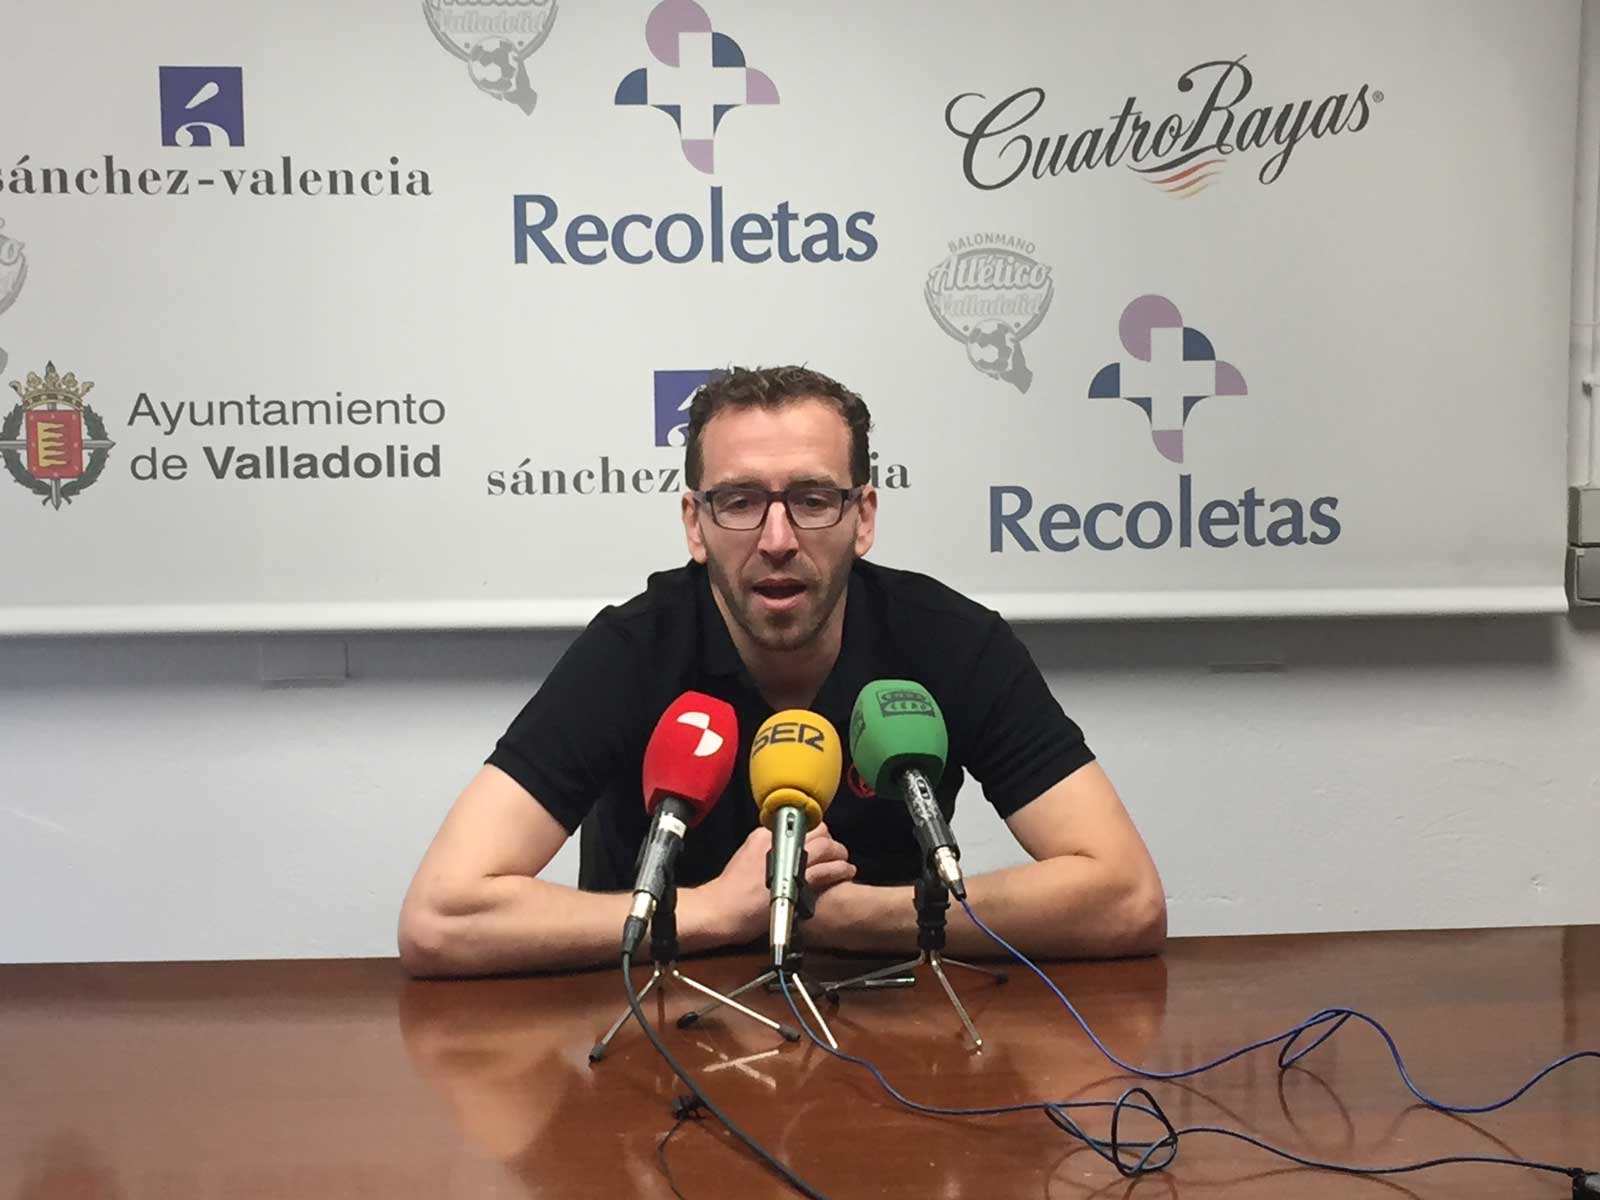 Fernando Hernández, renovado: “Tengo ganas de competir y me divierto jugando al balonmano cada vez que pongo un pie en Huerta del Rey” | Galería 2 / 2